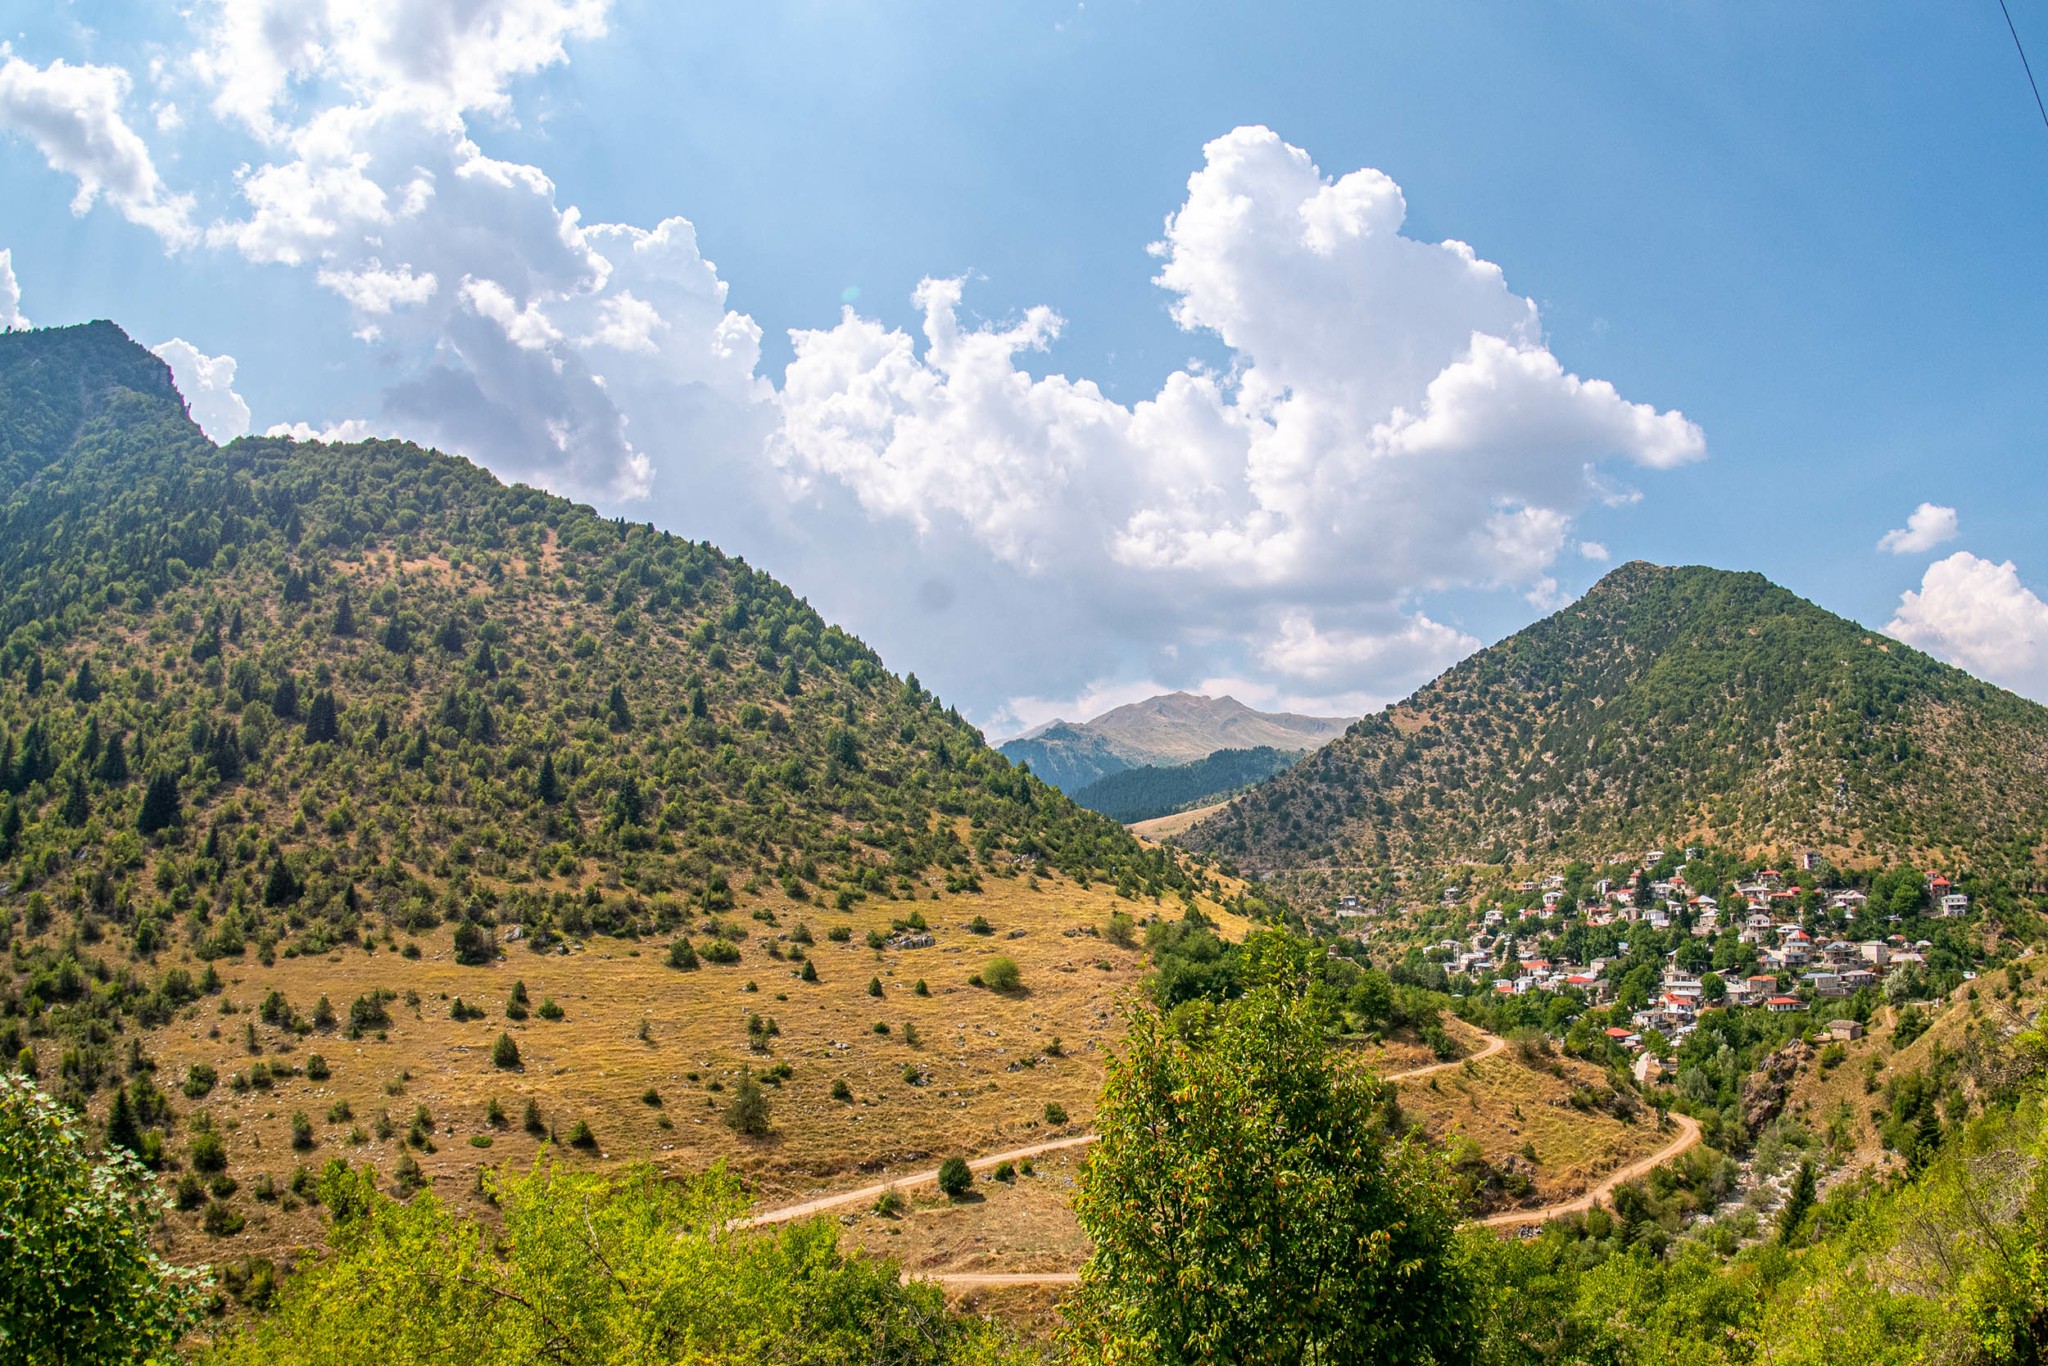 Μπάρος: Το θρυλικό πέρασμα – Η απόλυτη ορεινή διαδρομή στην Ελλάδα που αξίζει να ζήσετε έστω μια φορά